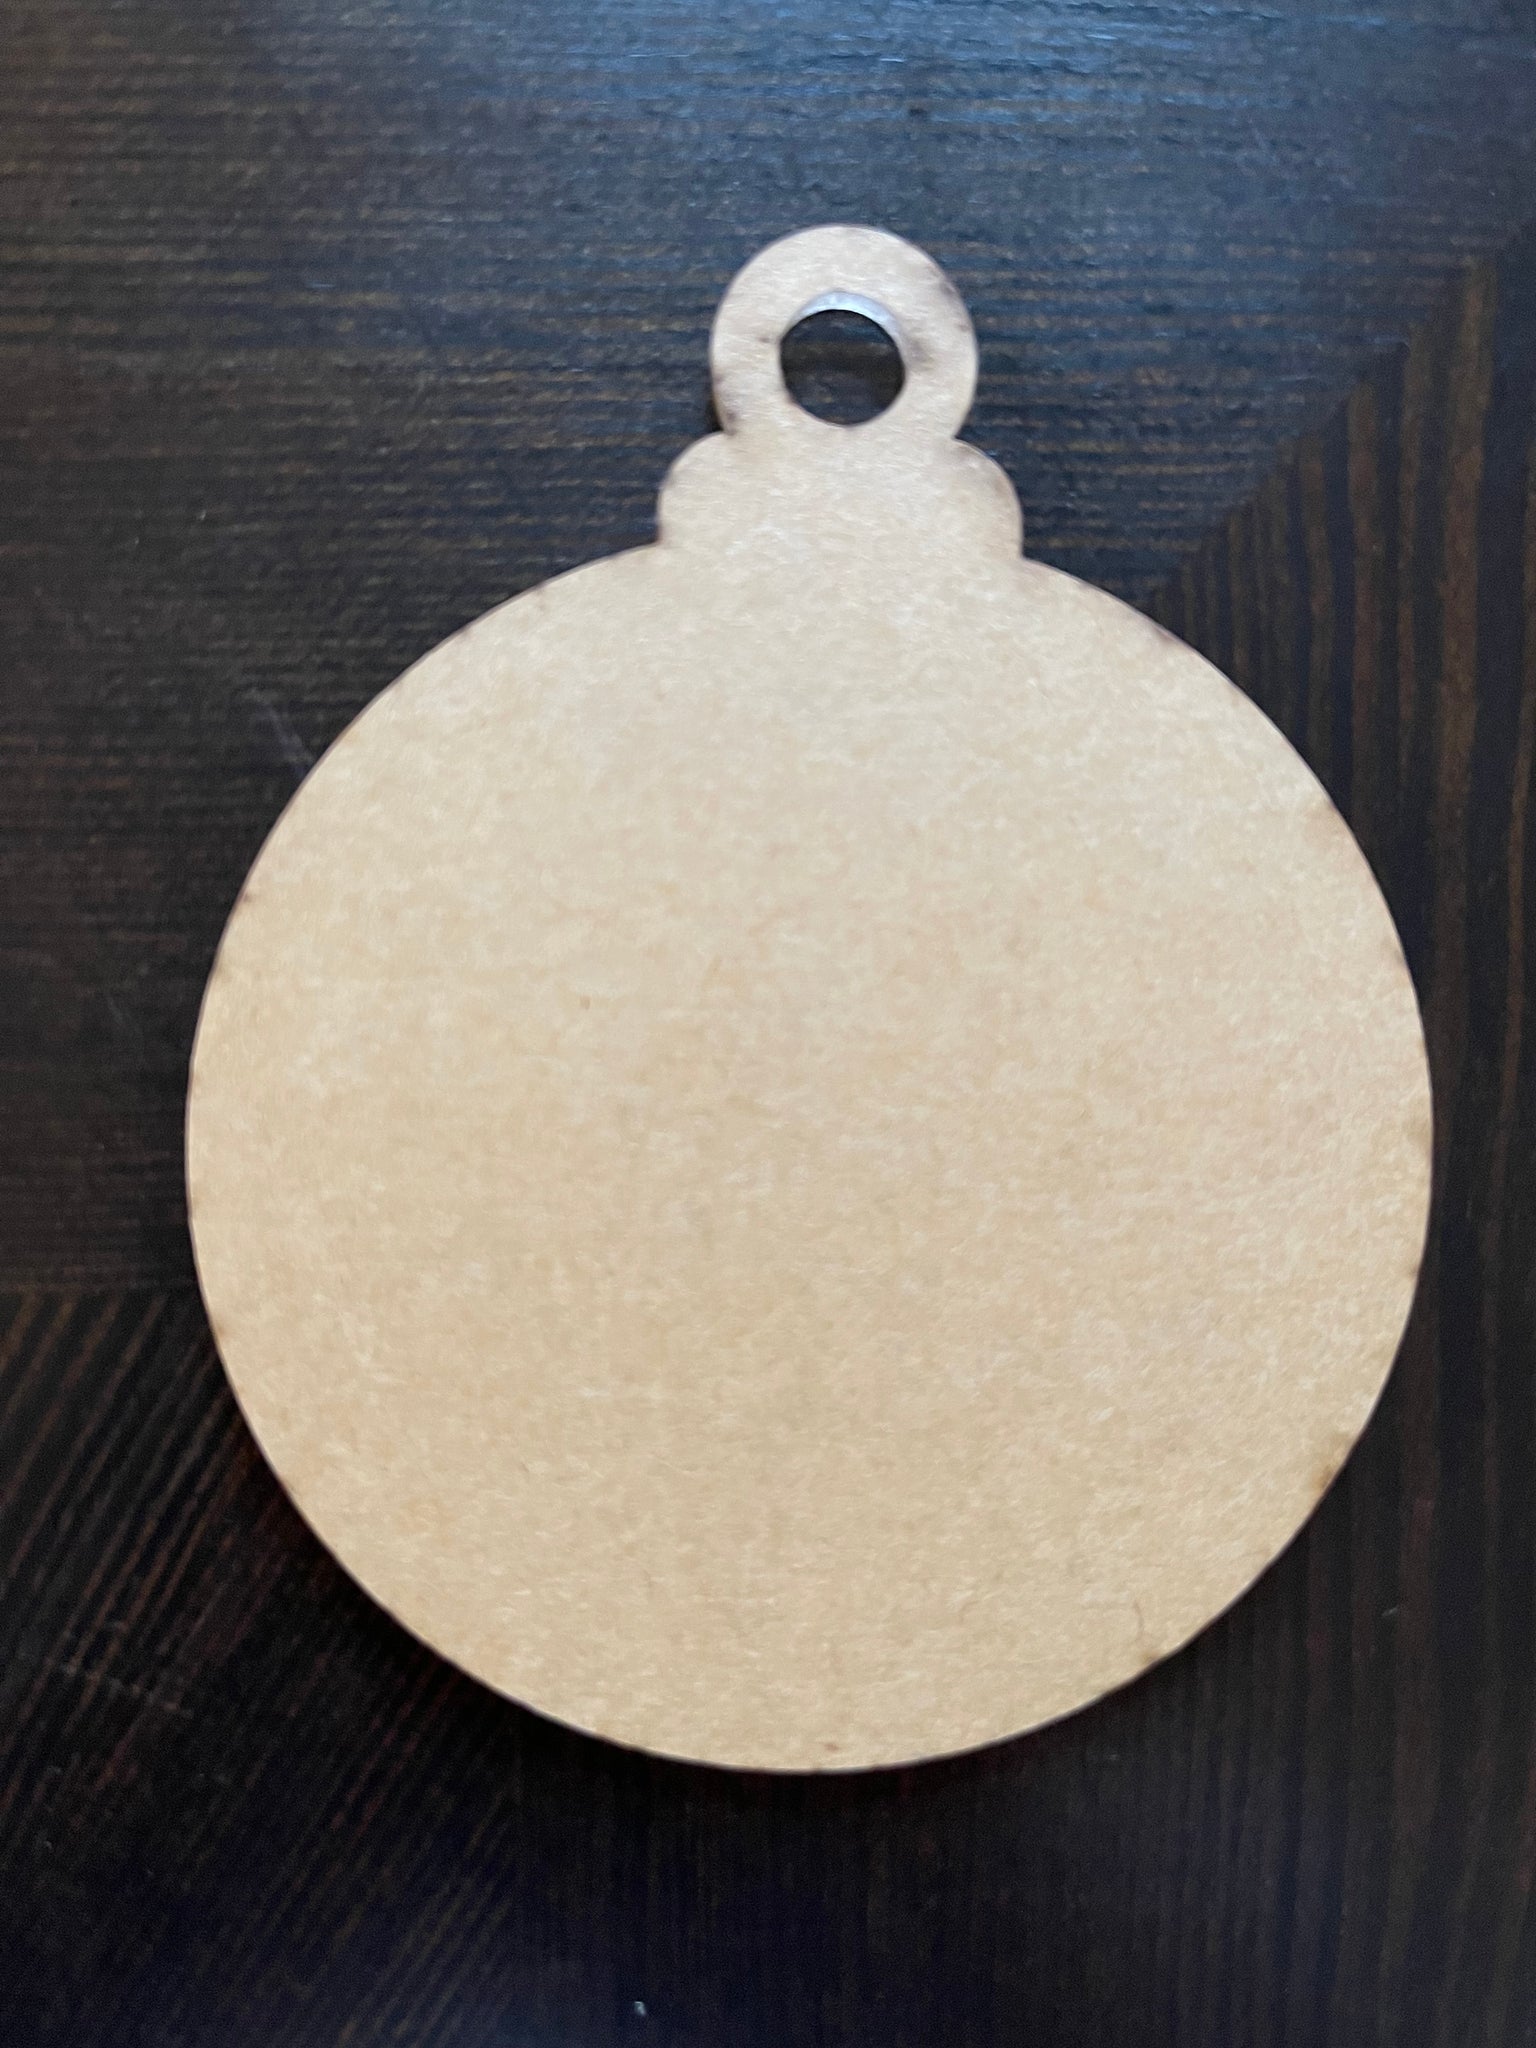 ORNAMENT ACRYLIC BLANK with hole - Clear Acrylic Ornament Keychain Bla –  Posh Glitter, LLC